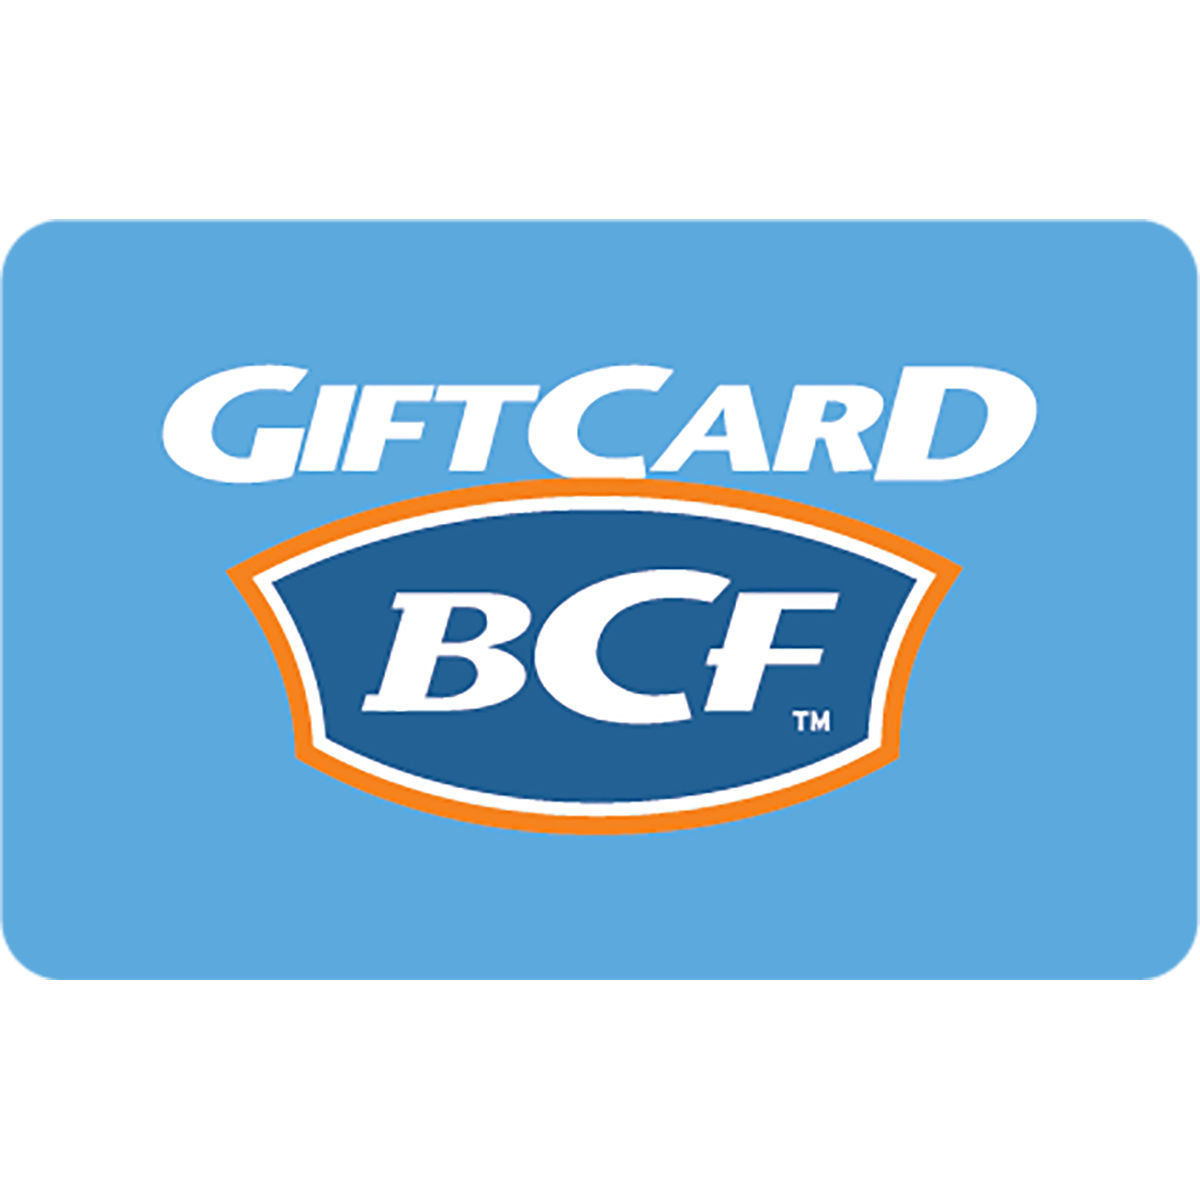 BCF Gift Card, , bcf_hi-res